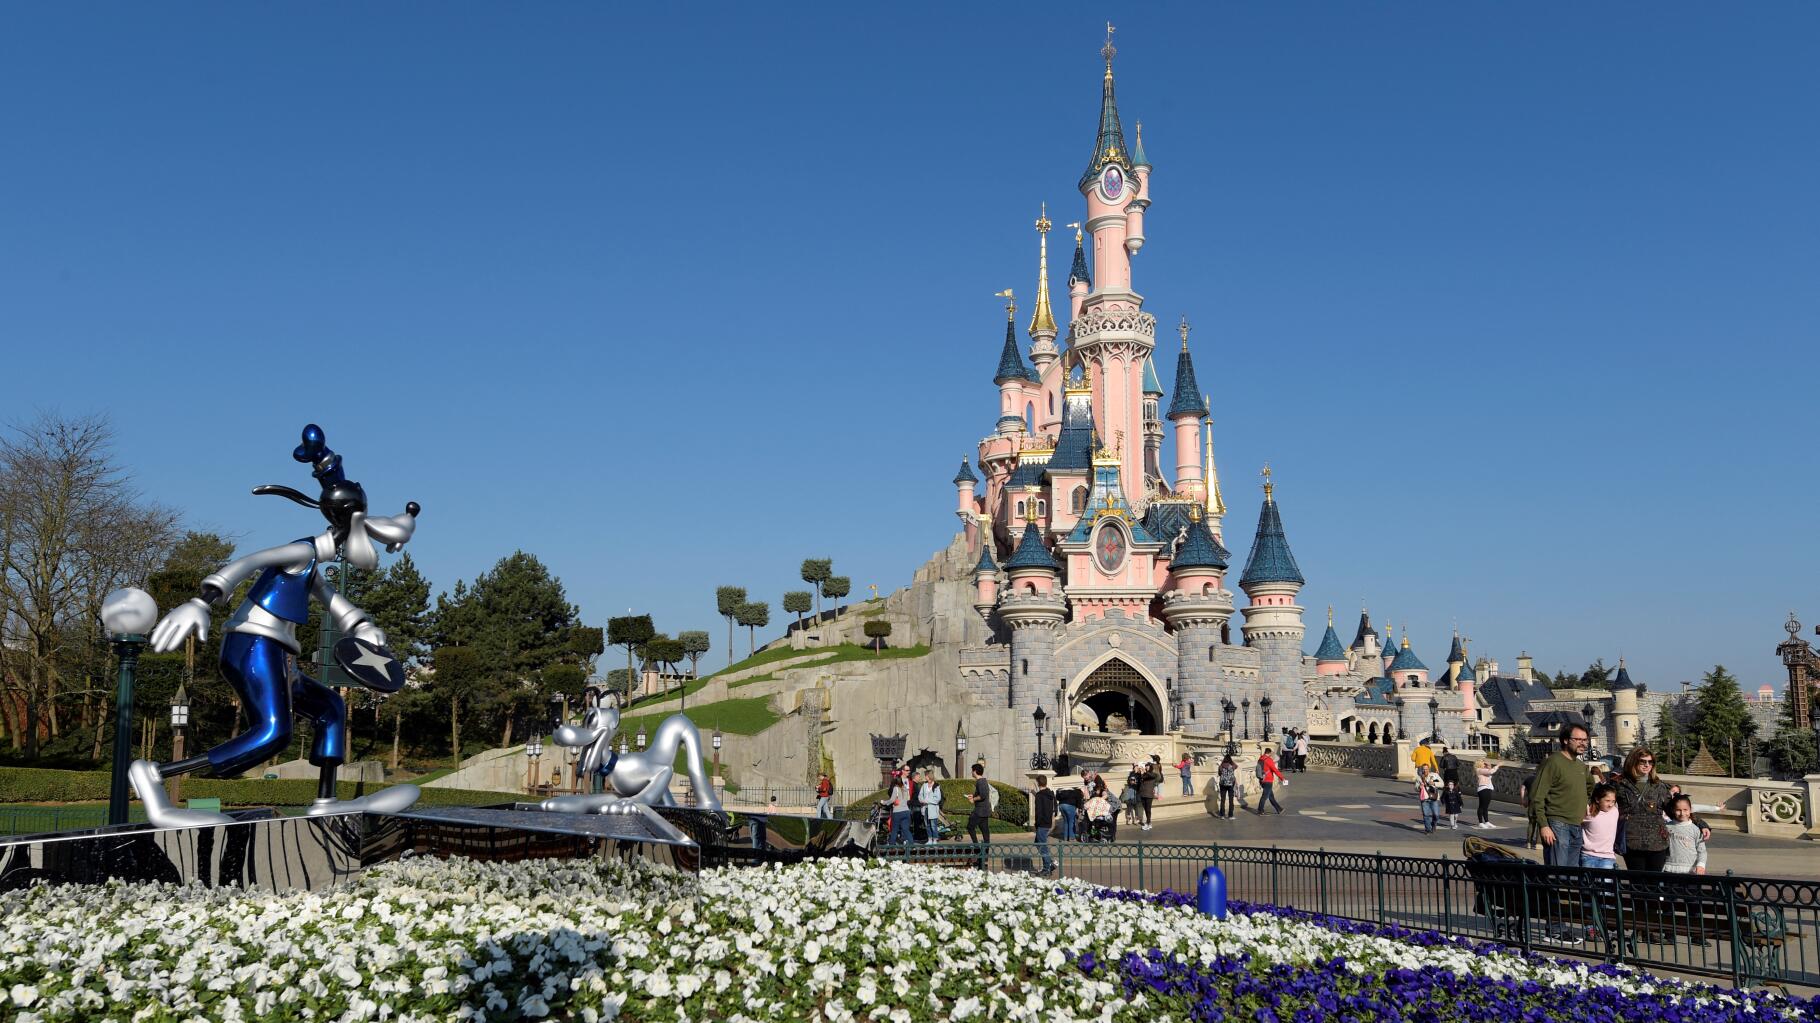 Disneyland Paris vit déjà une année noire, et cette pétition de